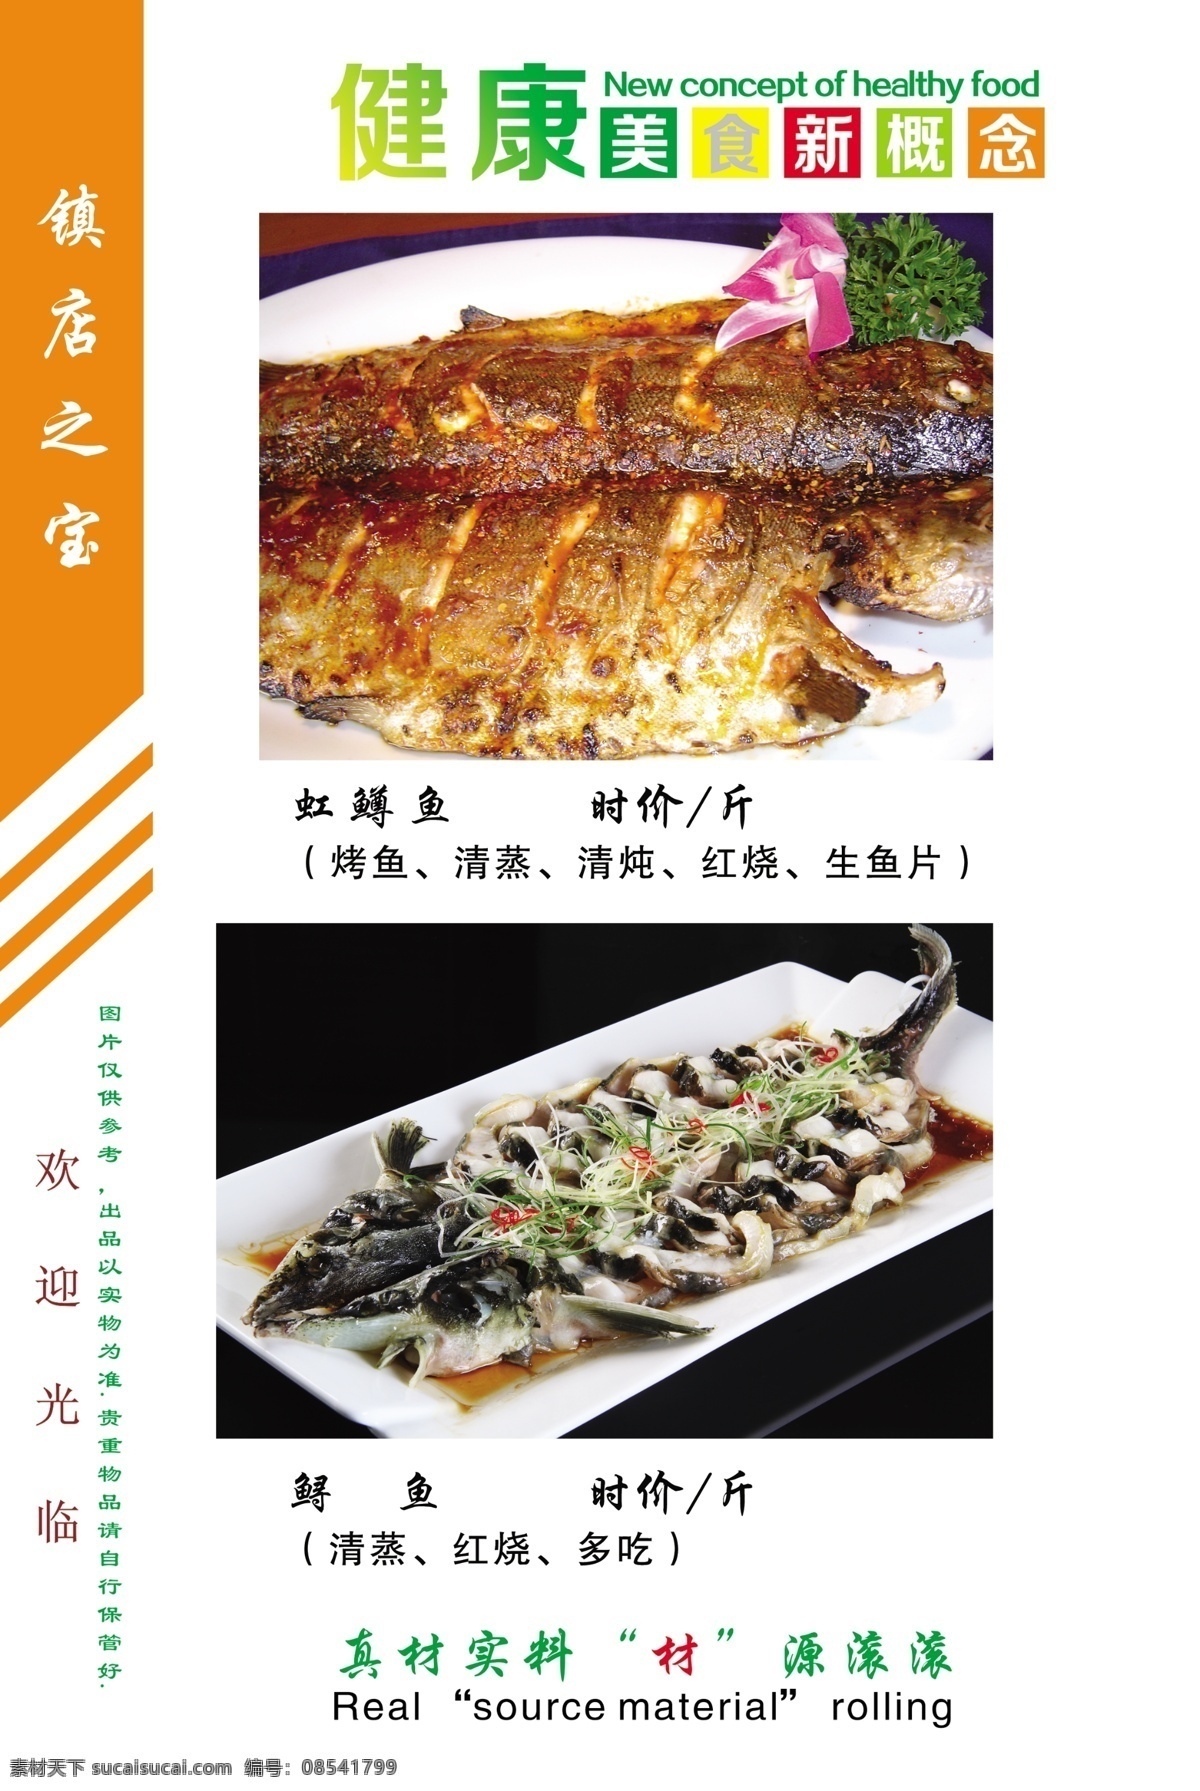 菜单1 菜单 烤鱼 虹鳟鱼 鲟鱼 菜谱 分层